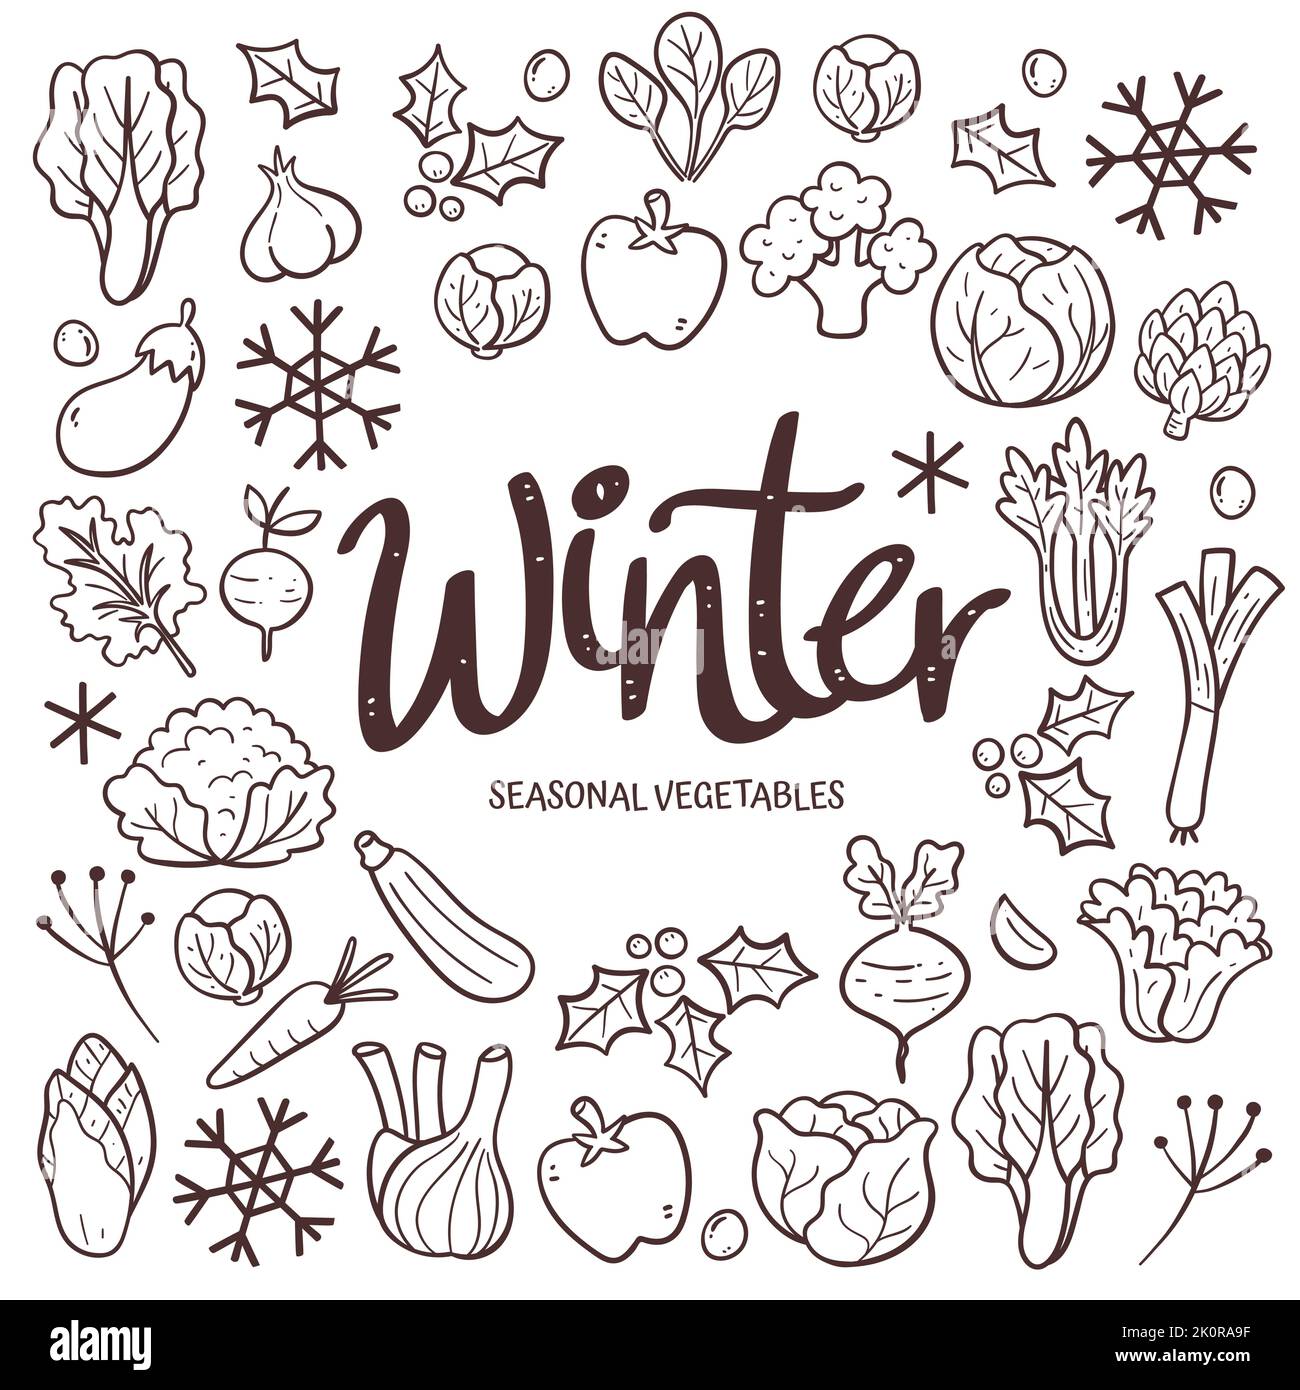 Saisonales Gemüse im Hintergrund. Handgezeichnetes Wintergemüse Komposition aus Doodle Vektor-Icons, isoliert auf weißem Hintergrund. Stock Vektor